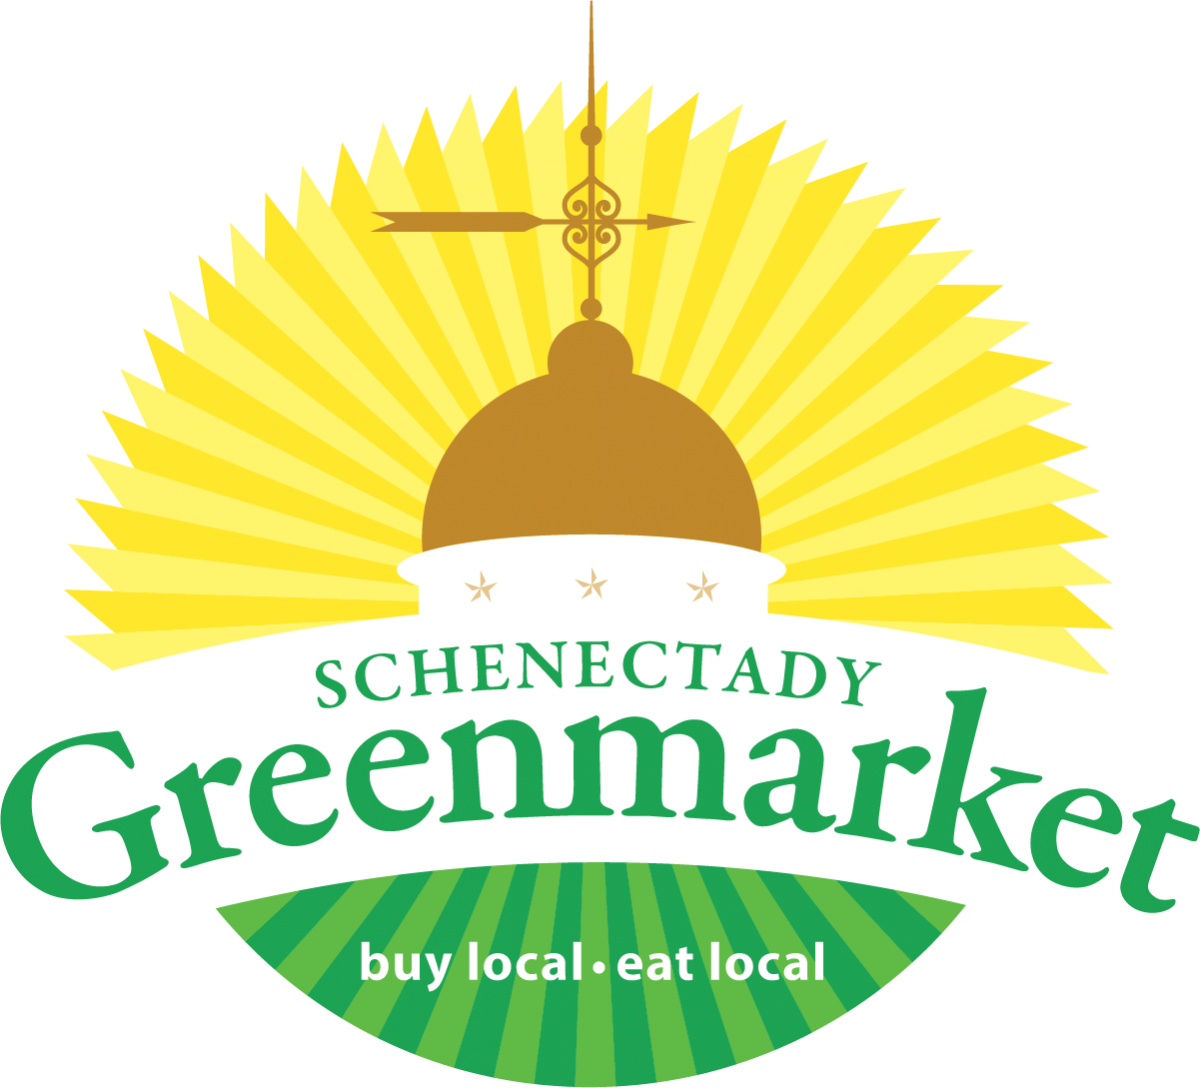 Schenectady Greenmarket Trolley